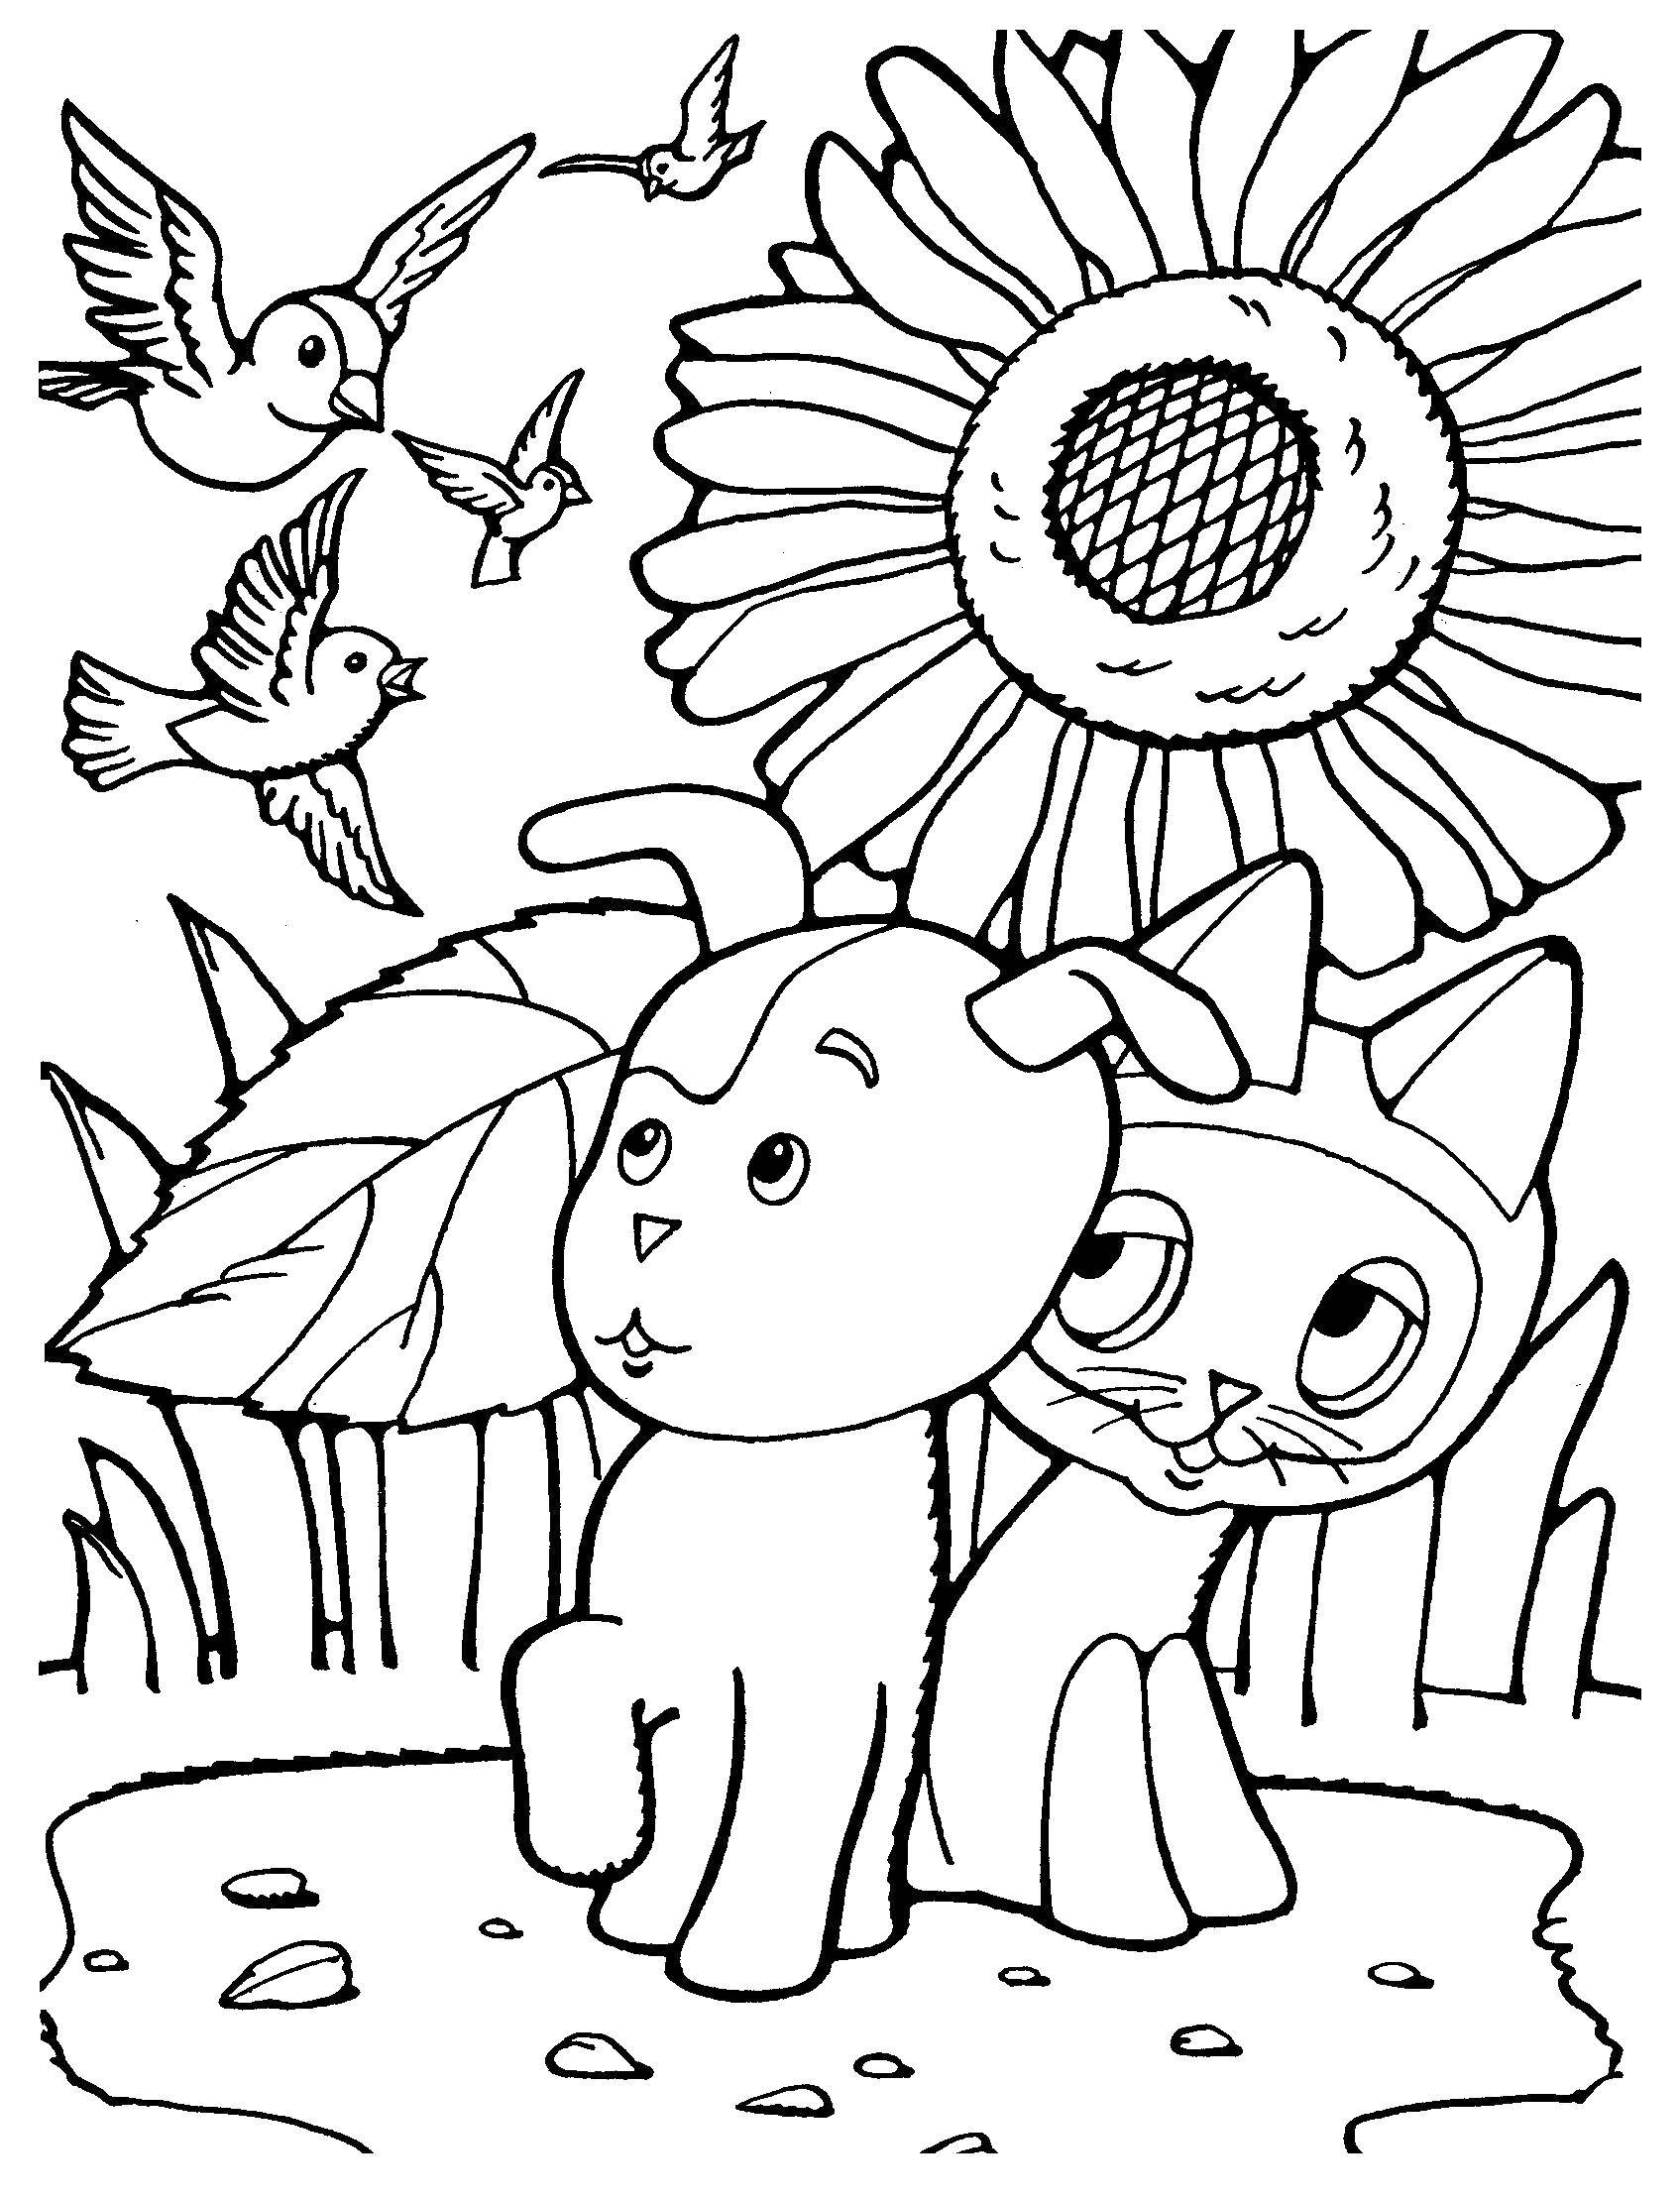 Опис: розмальовки  Кошеня по імені гав і кулька. Категорія: кошеня гав. Теги:  Персонаж з мультфільму, кошеня по імені Гав .